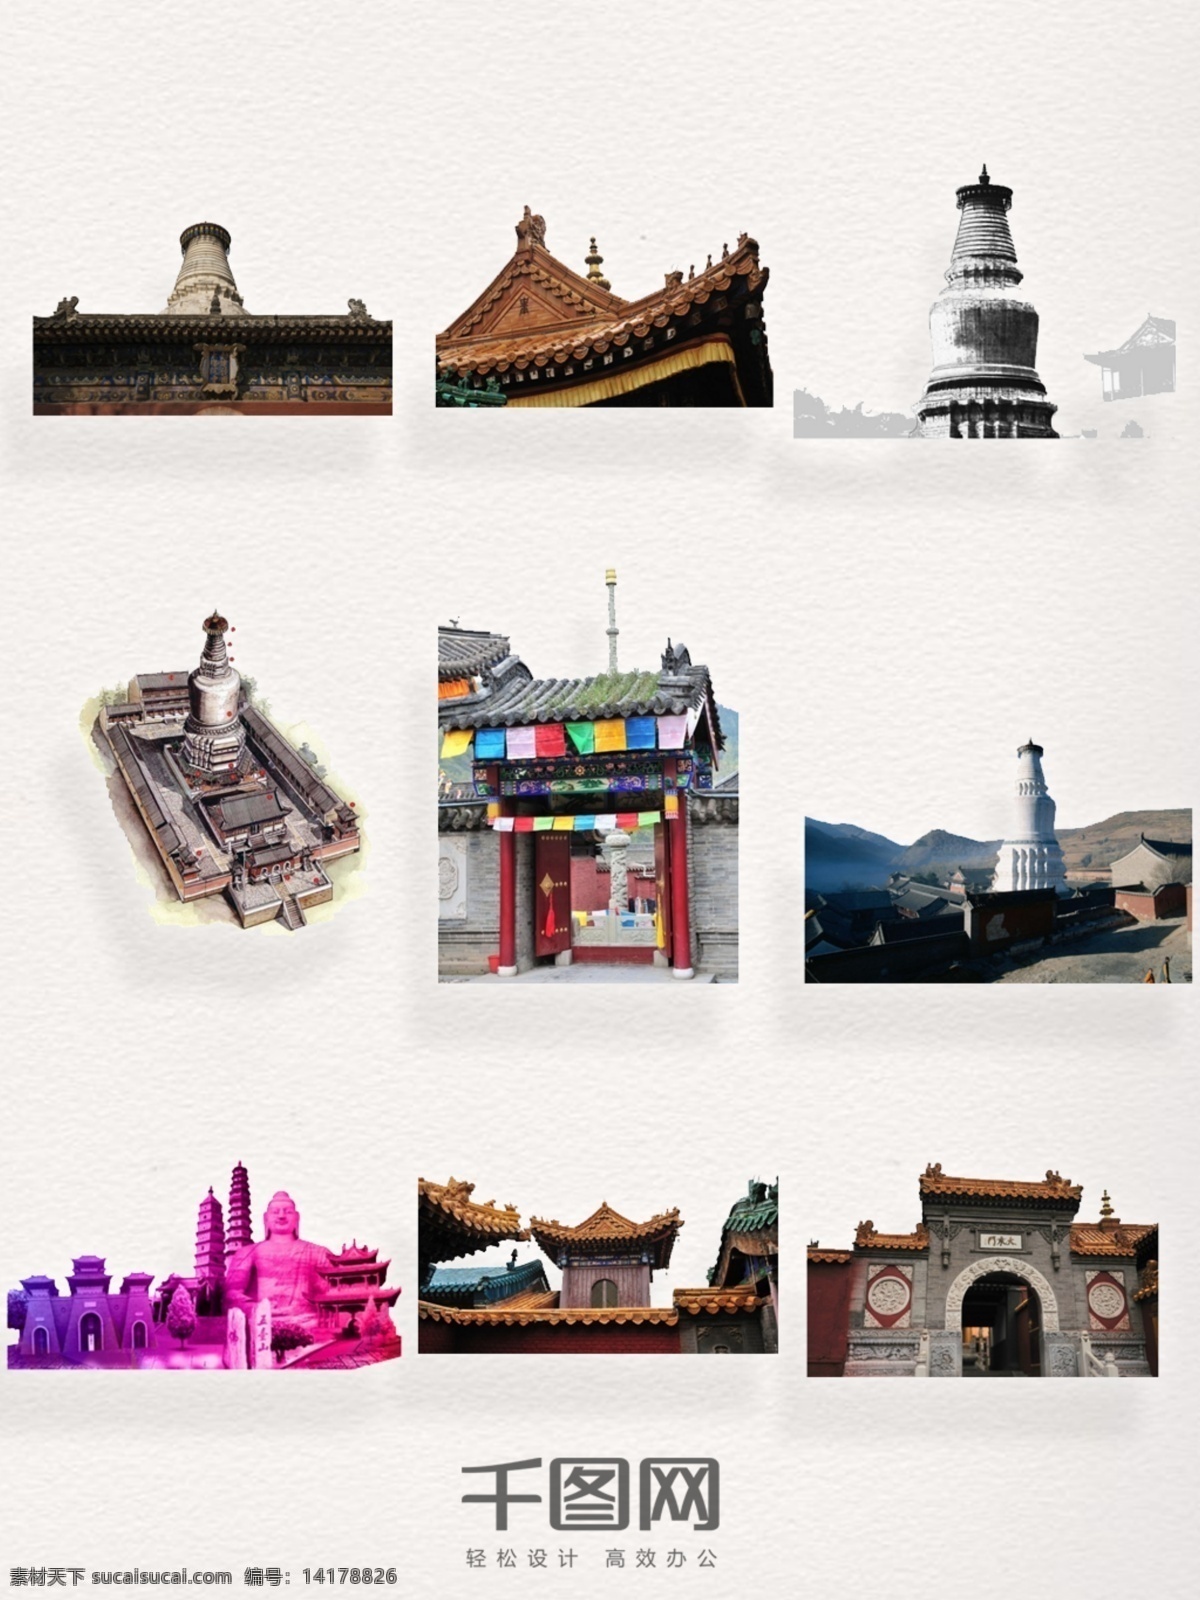 中国 佛教 名山 五台山 自然风光 五台山俯瞰图 手绘 寺院 中国建筑 水粉风